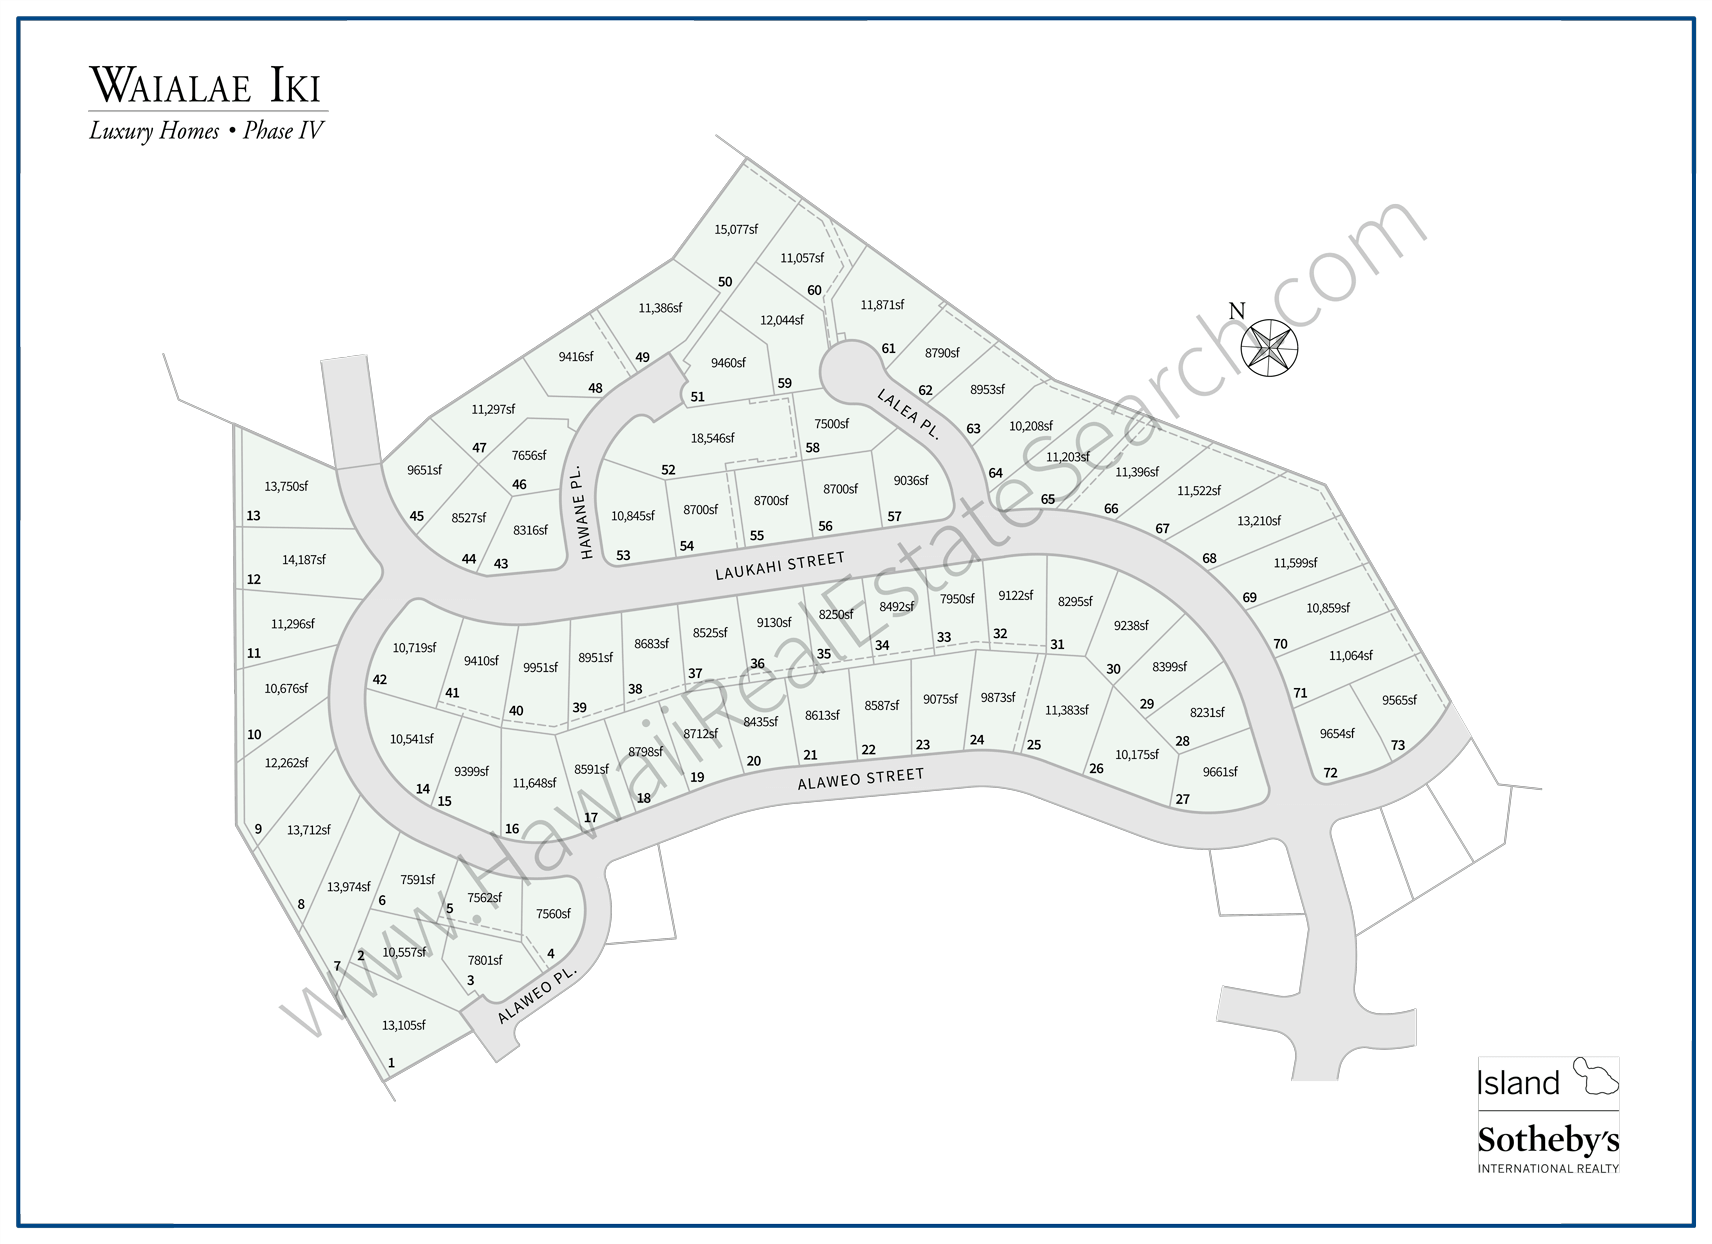 Waialae Iki's Phase IV Map